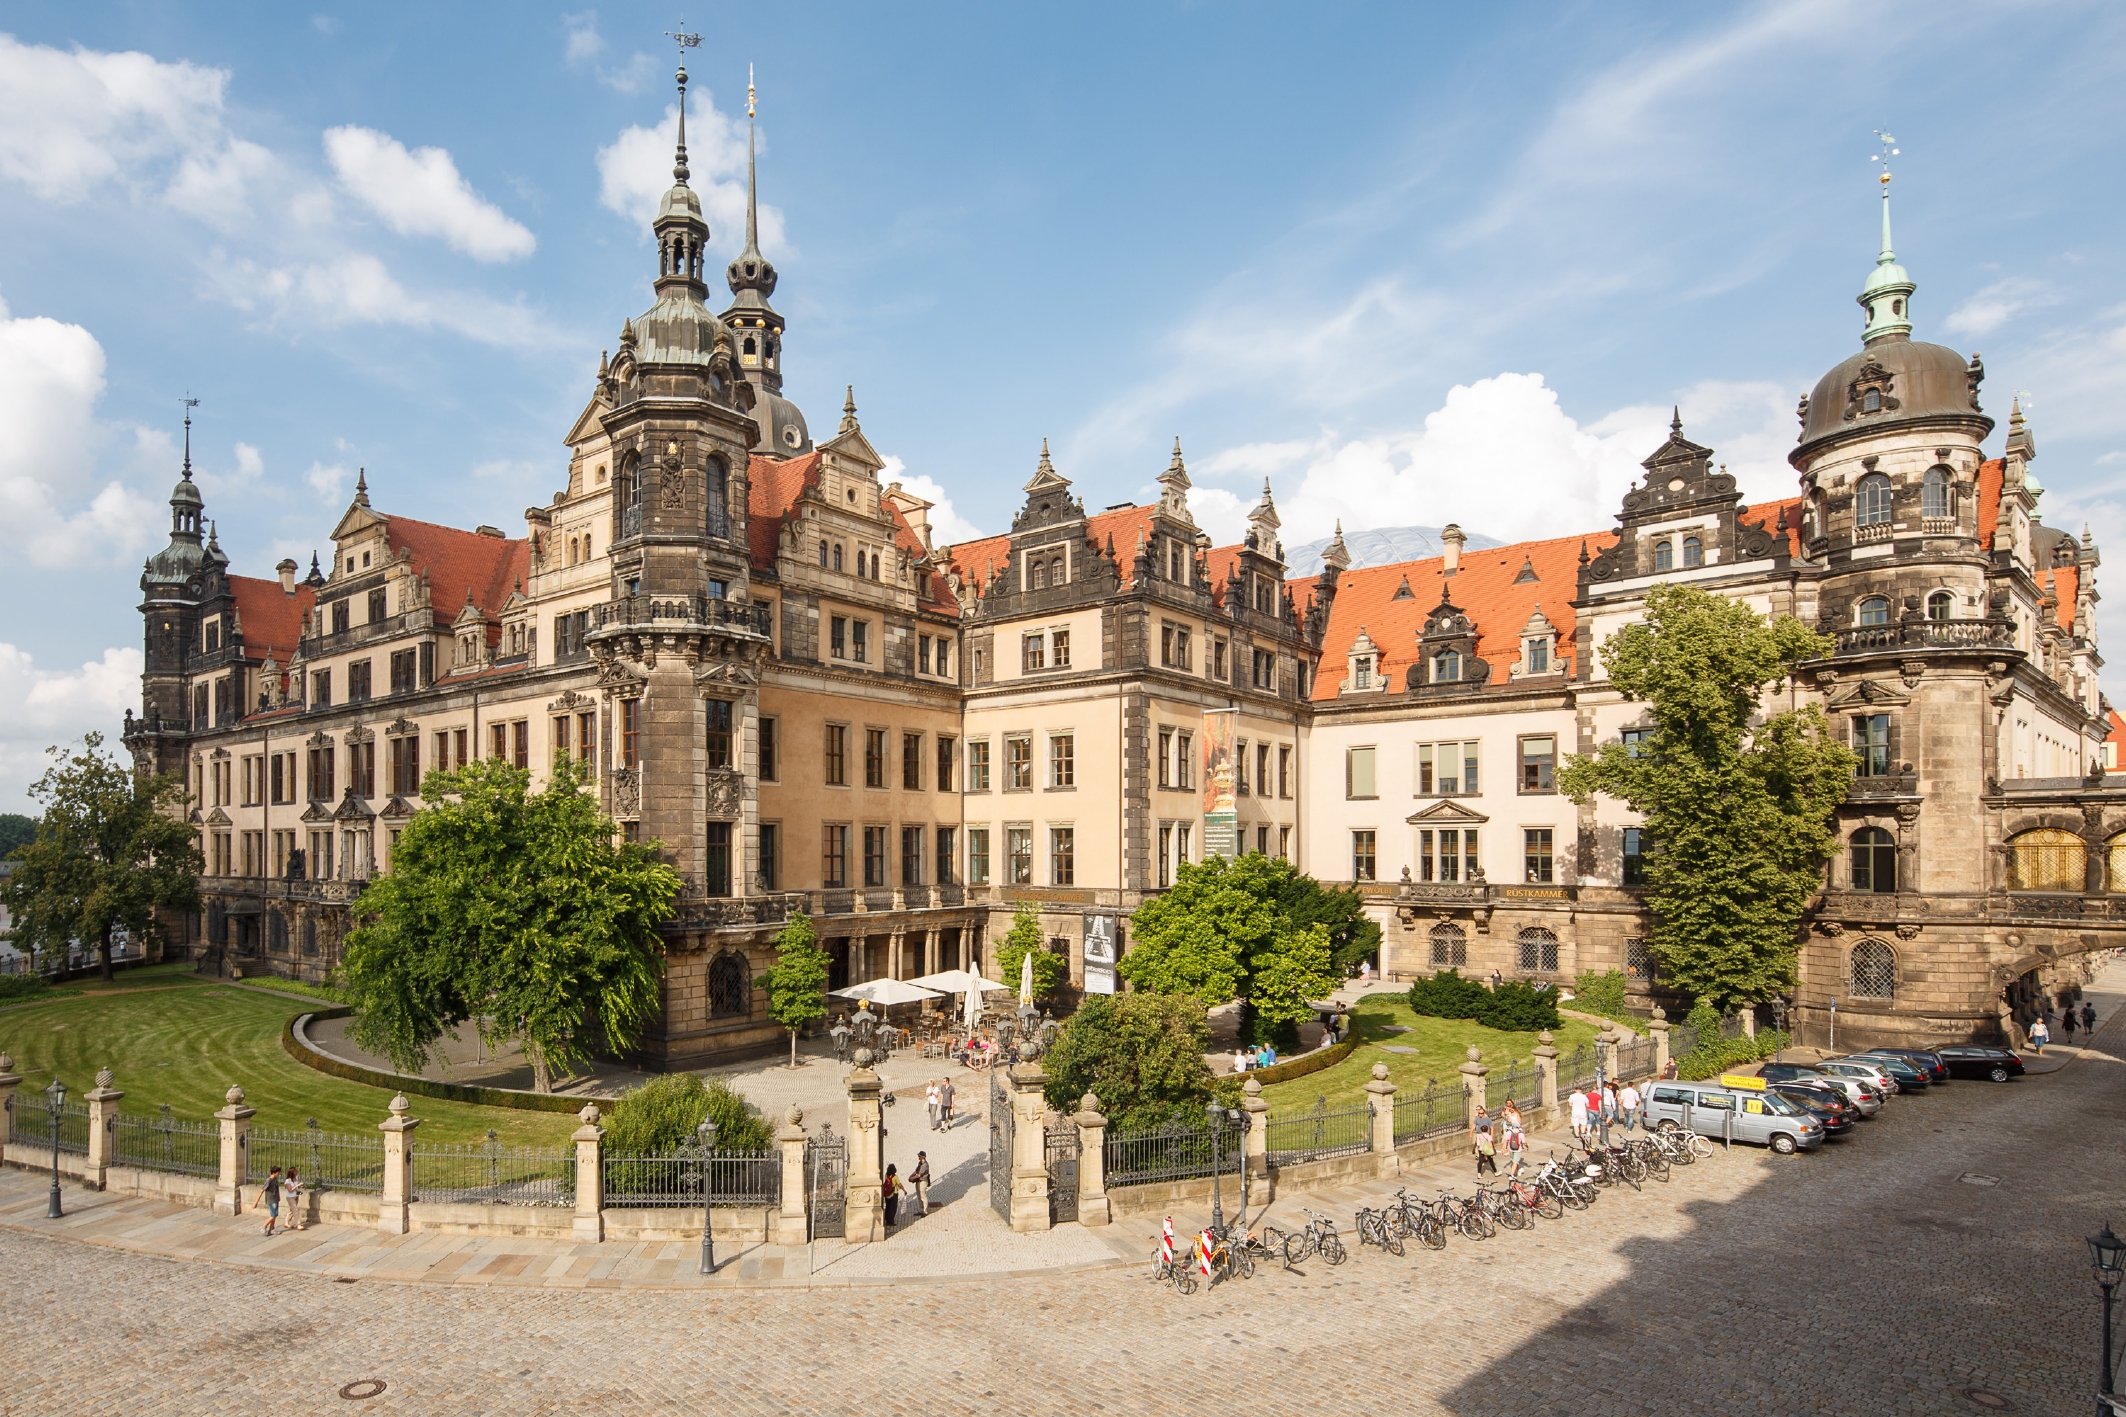 Das Foto zeigt eine Außenansicht des Residenzschlosses in Dresden, welches unter anderem die Ausstellungsräume des Historischen Grünen Gewölbes der Staatlichen Kunstsammlungen Dresden beherbergt.